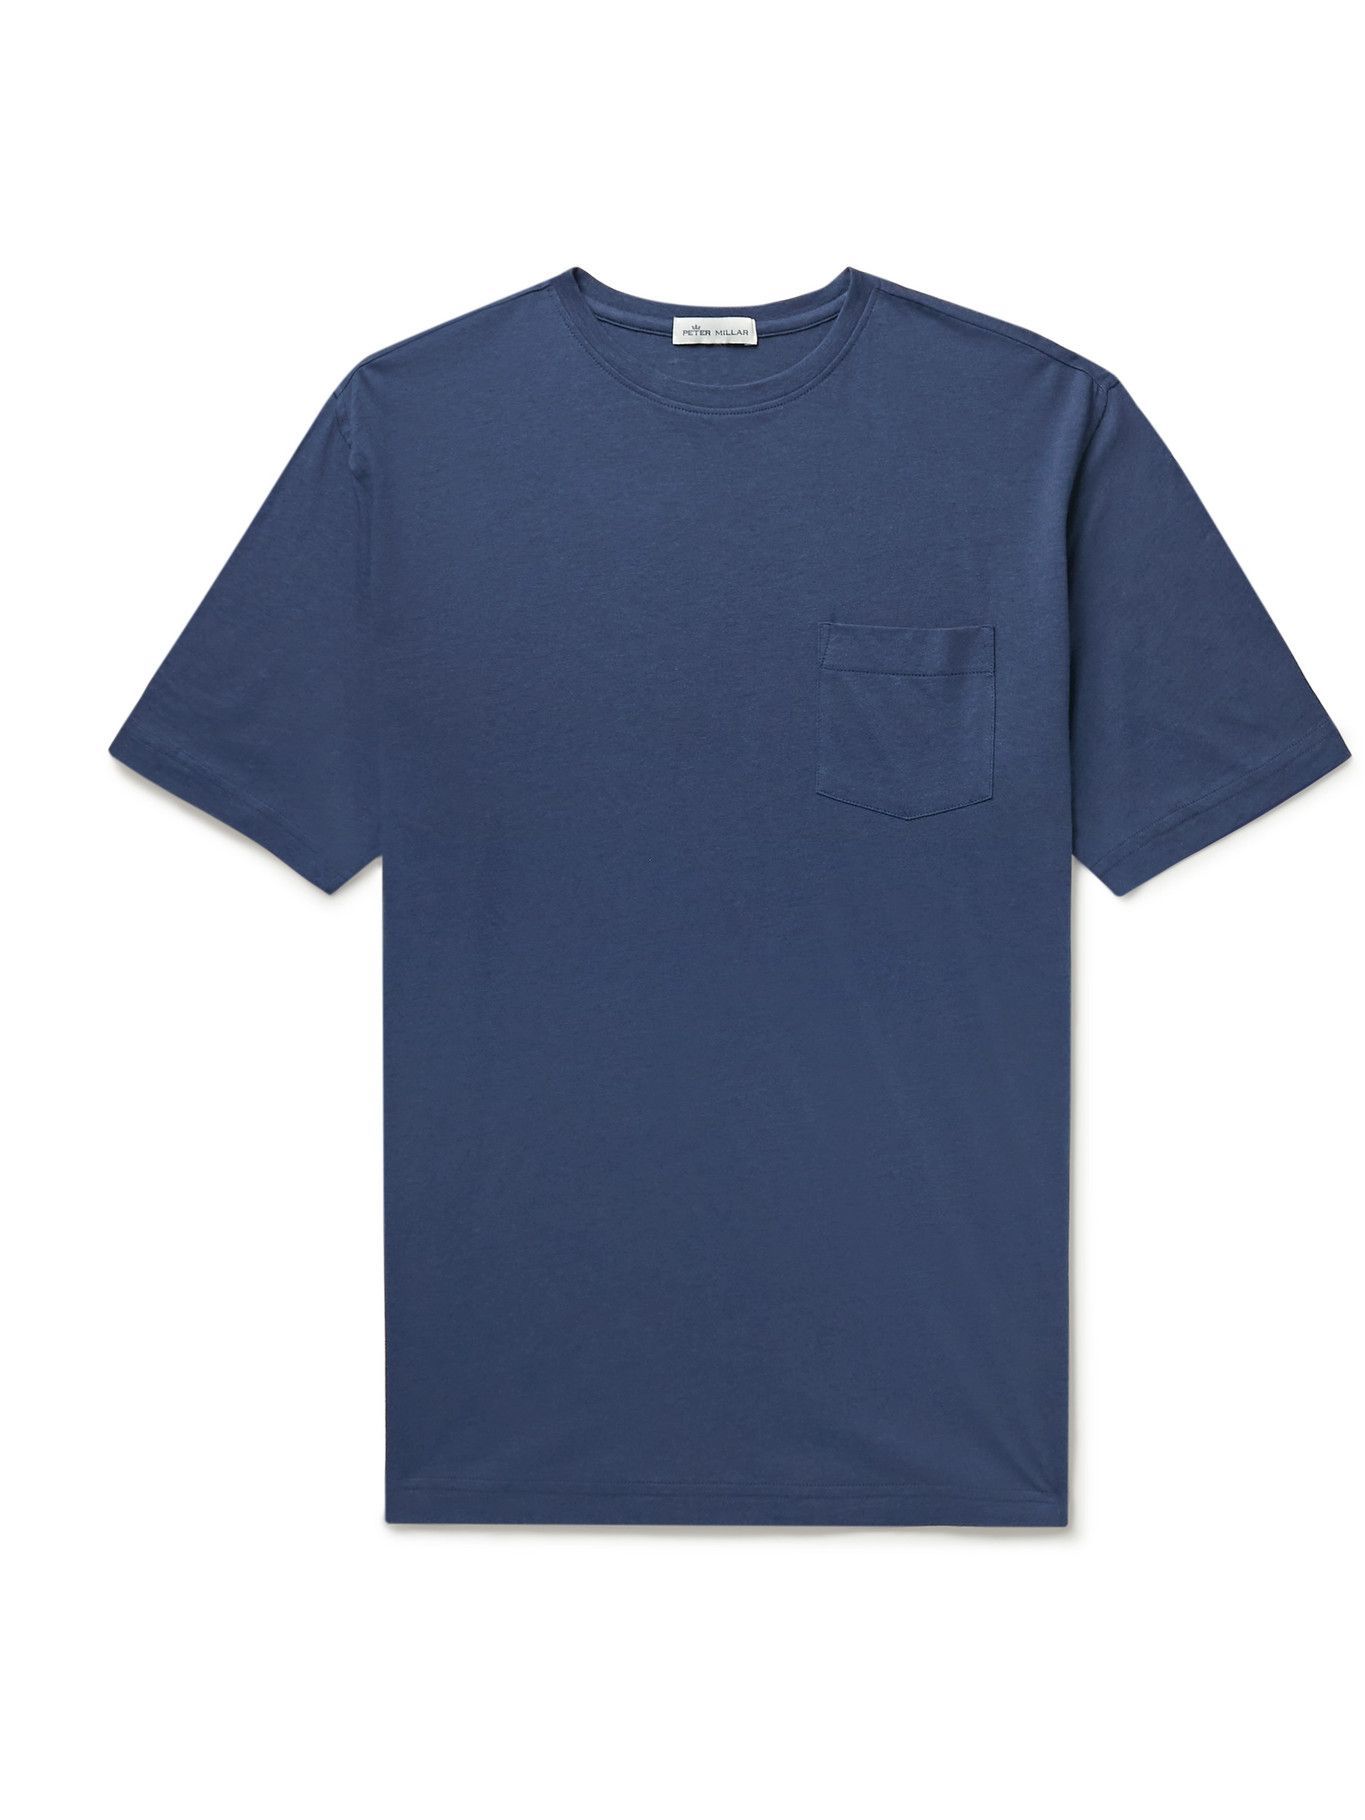 PETER MILLAR - Seaside Summer Cotton and Modal-Blend Jersey T-Shirt ...